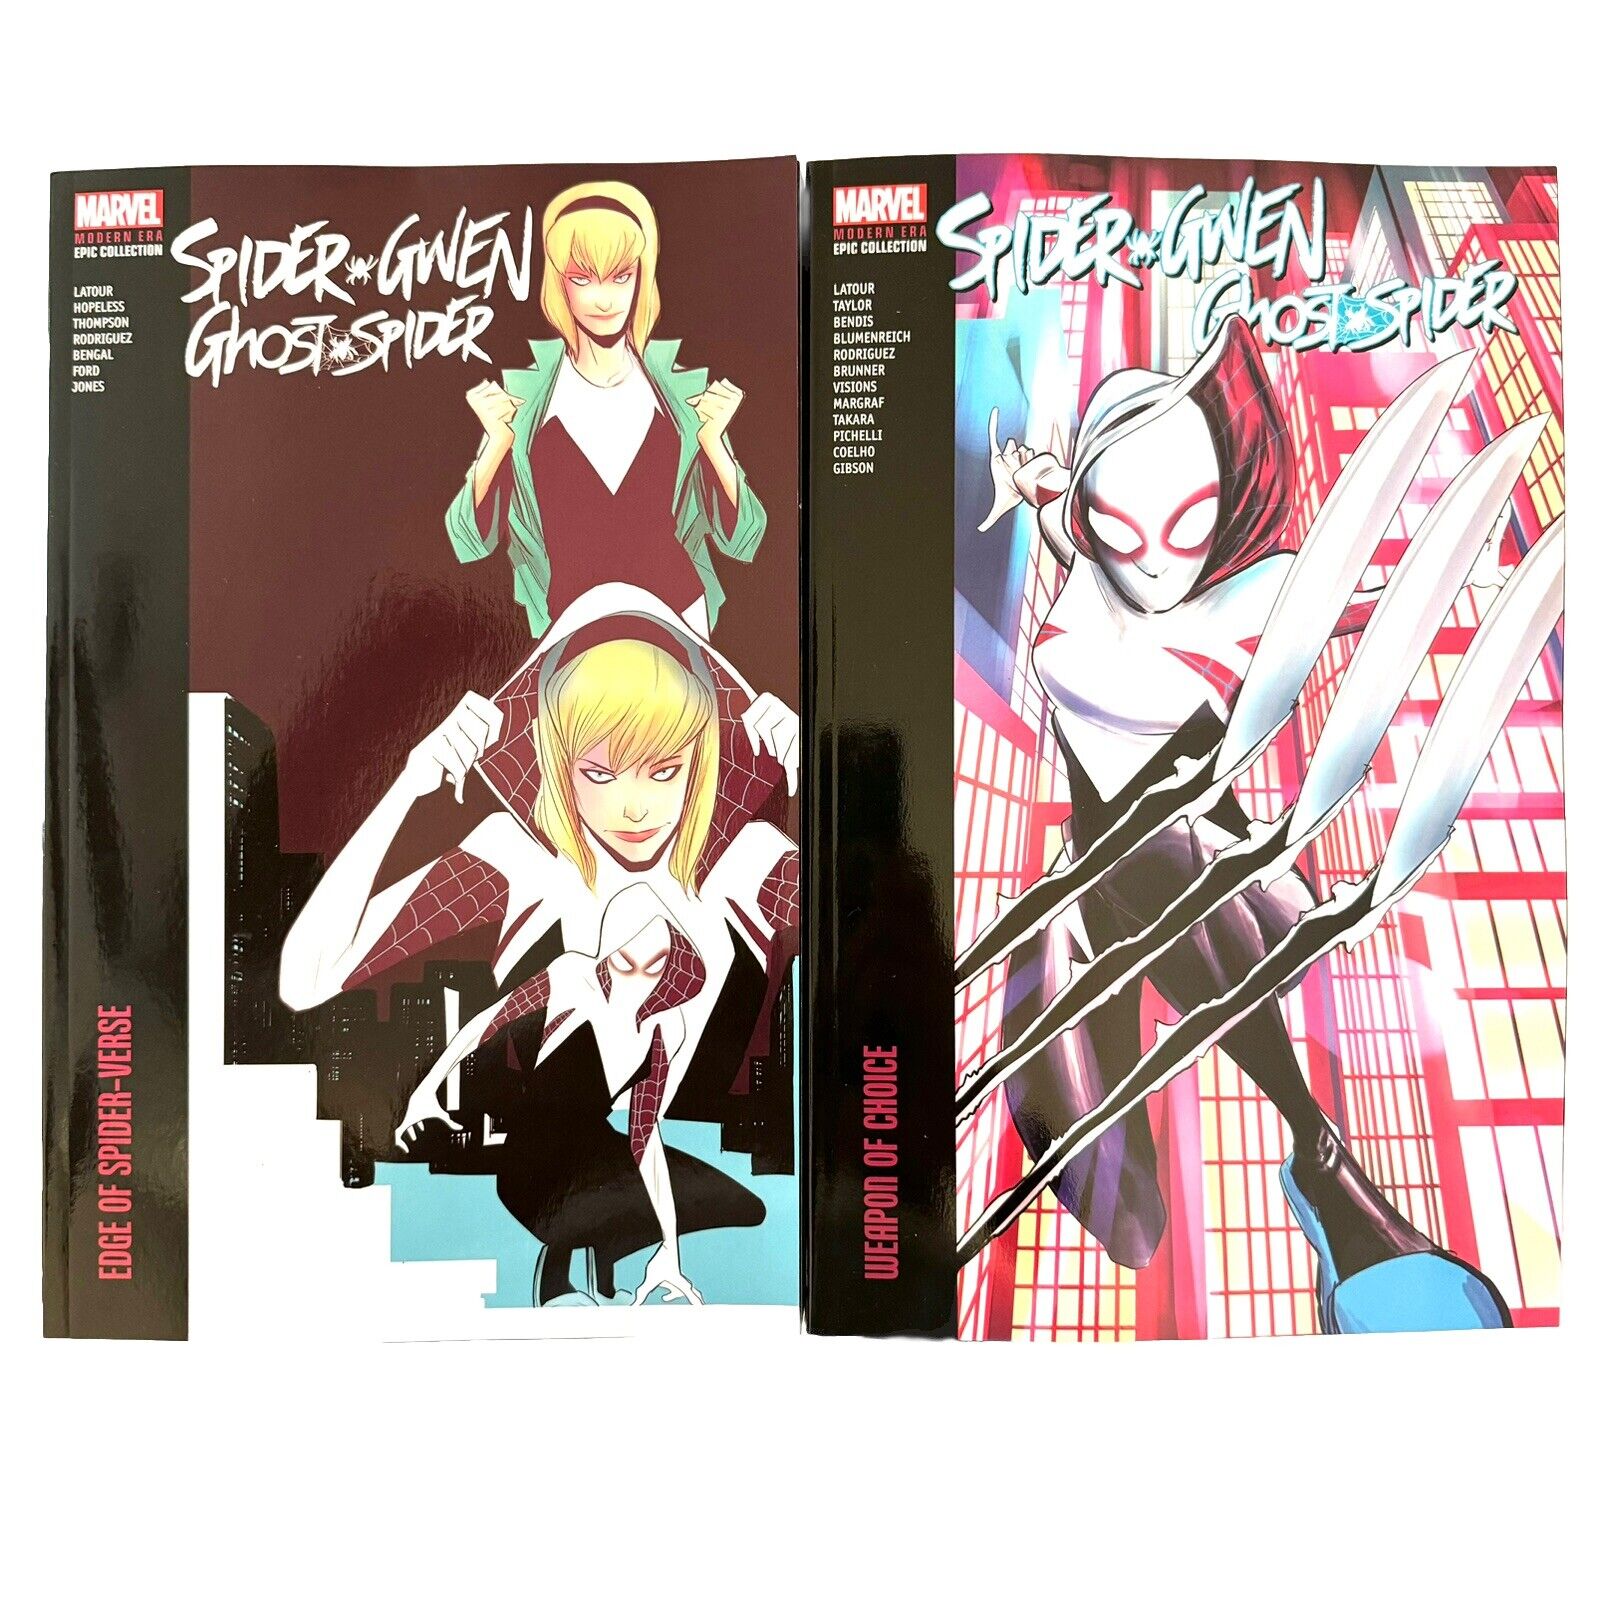 Spider-Gwen Ghost-Spider Epic Collection Weapon Choice & Spider-Verse New